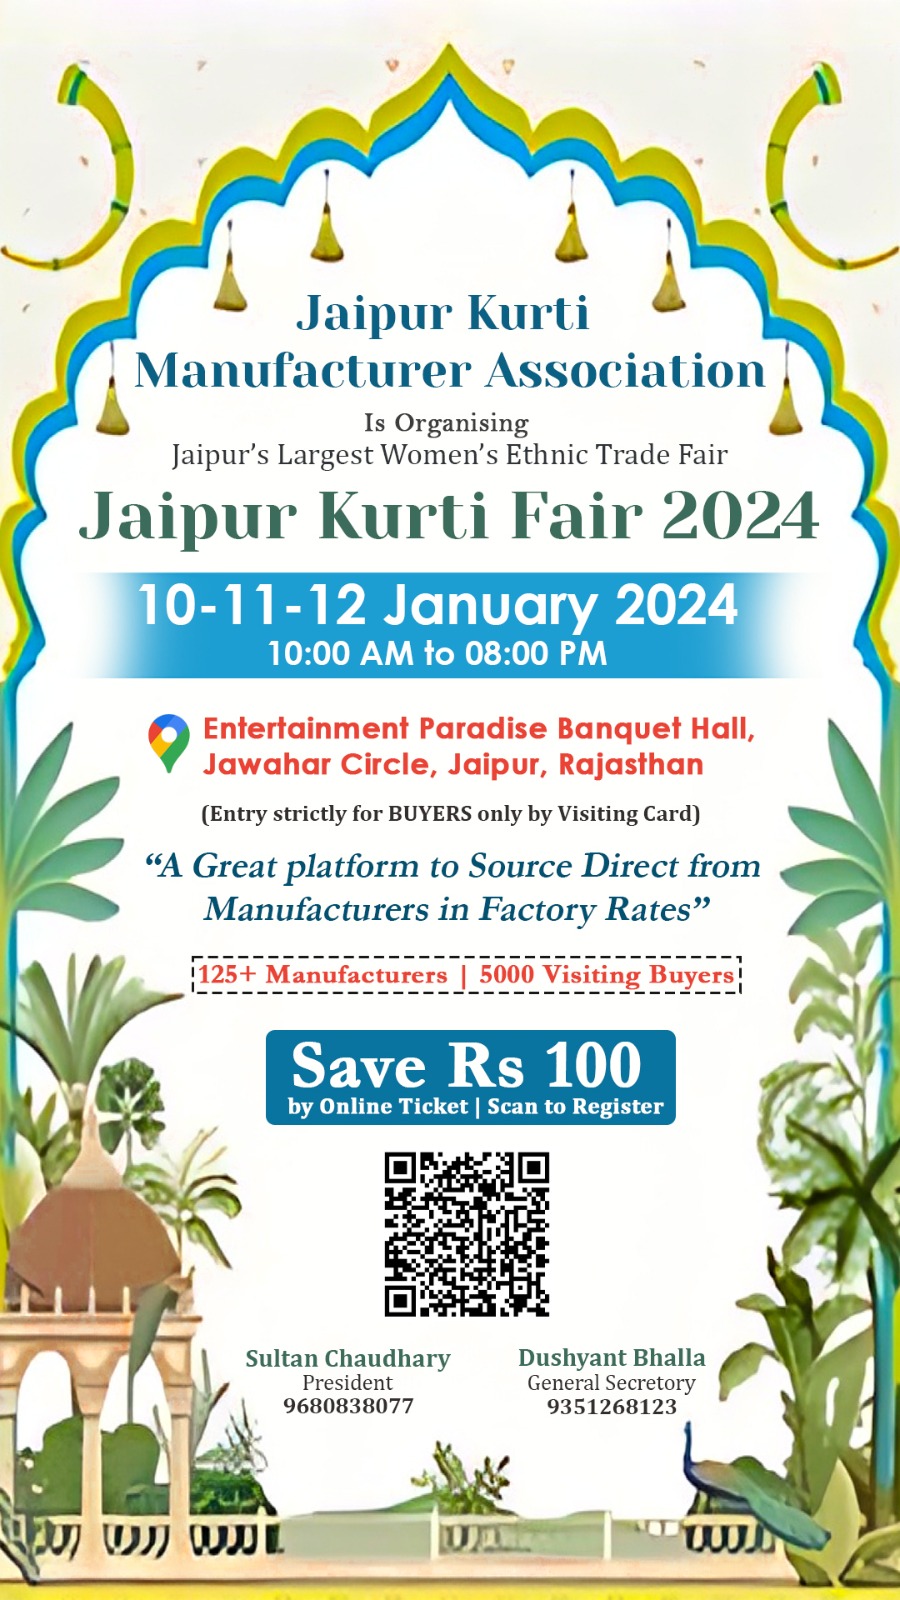 jaipur kurti fair 2024, kurti fair in jaipur, kurti expo in jaipur, garment expo in jaipur